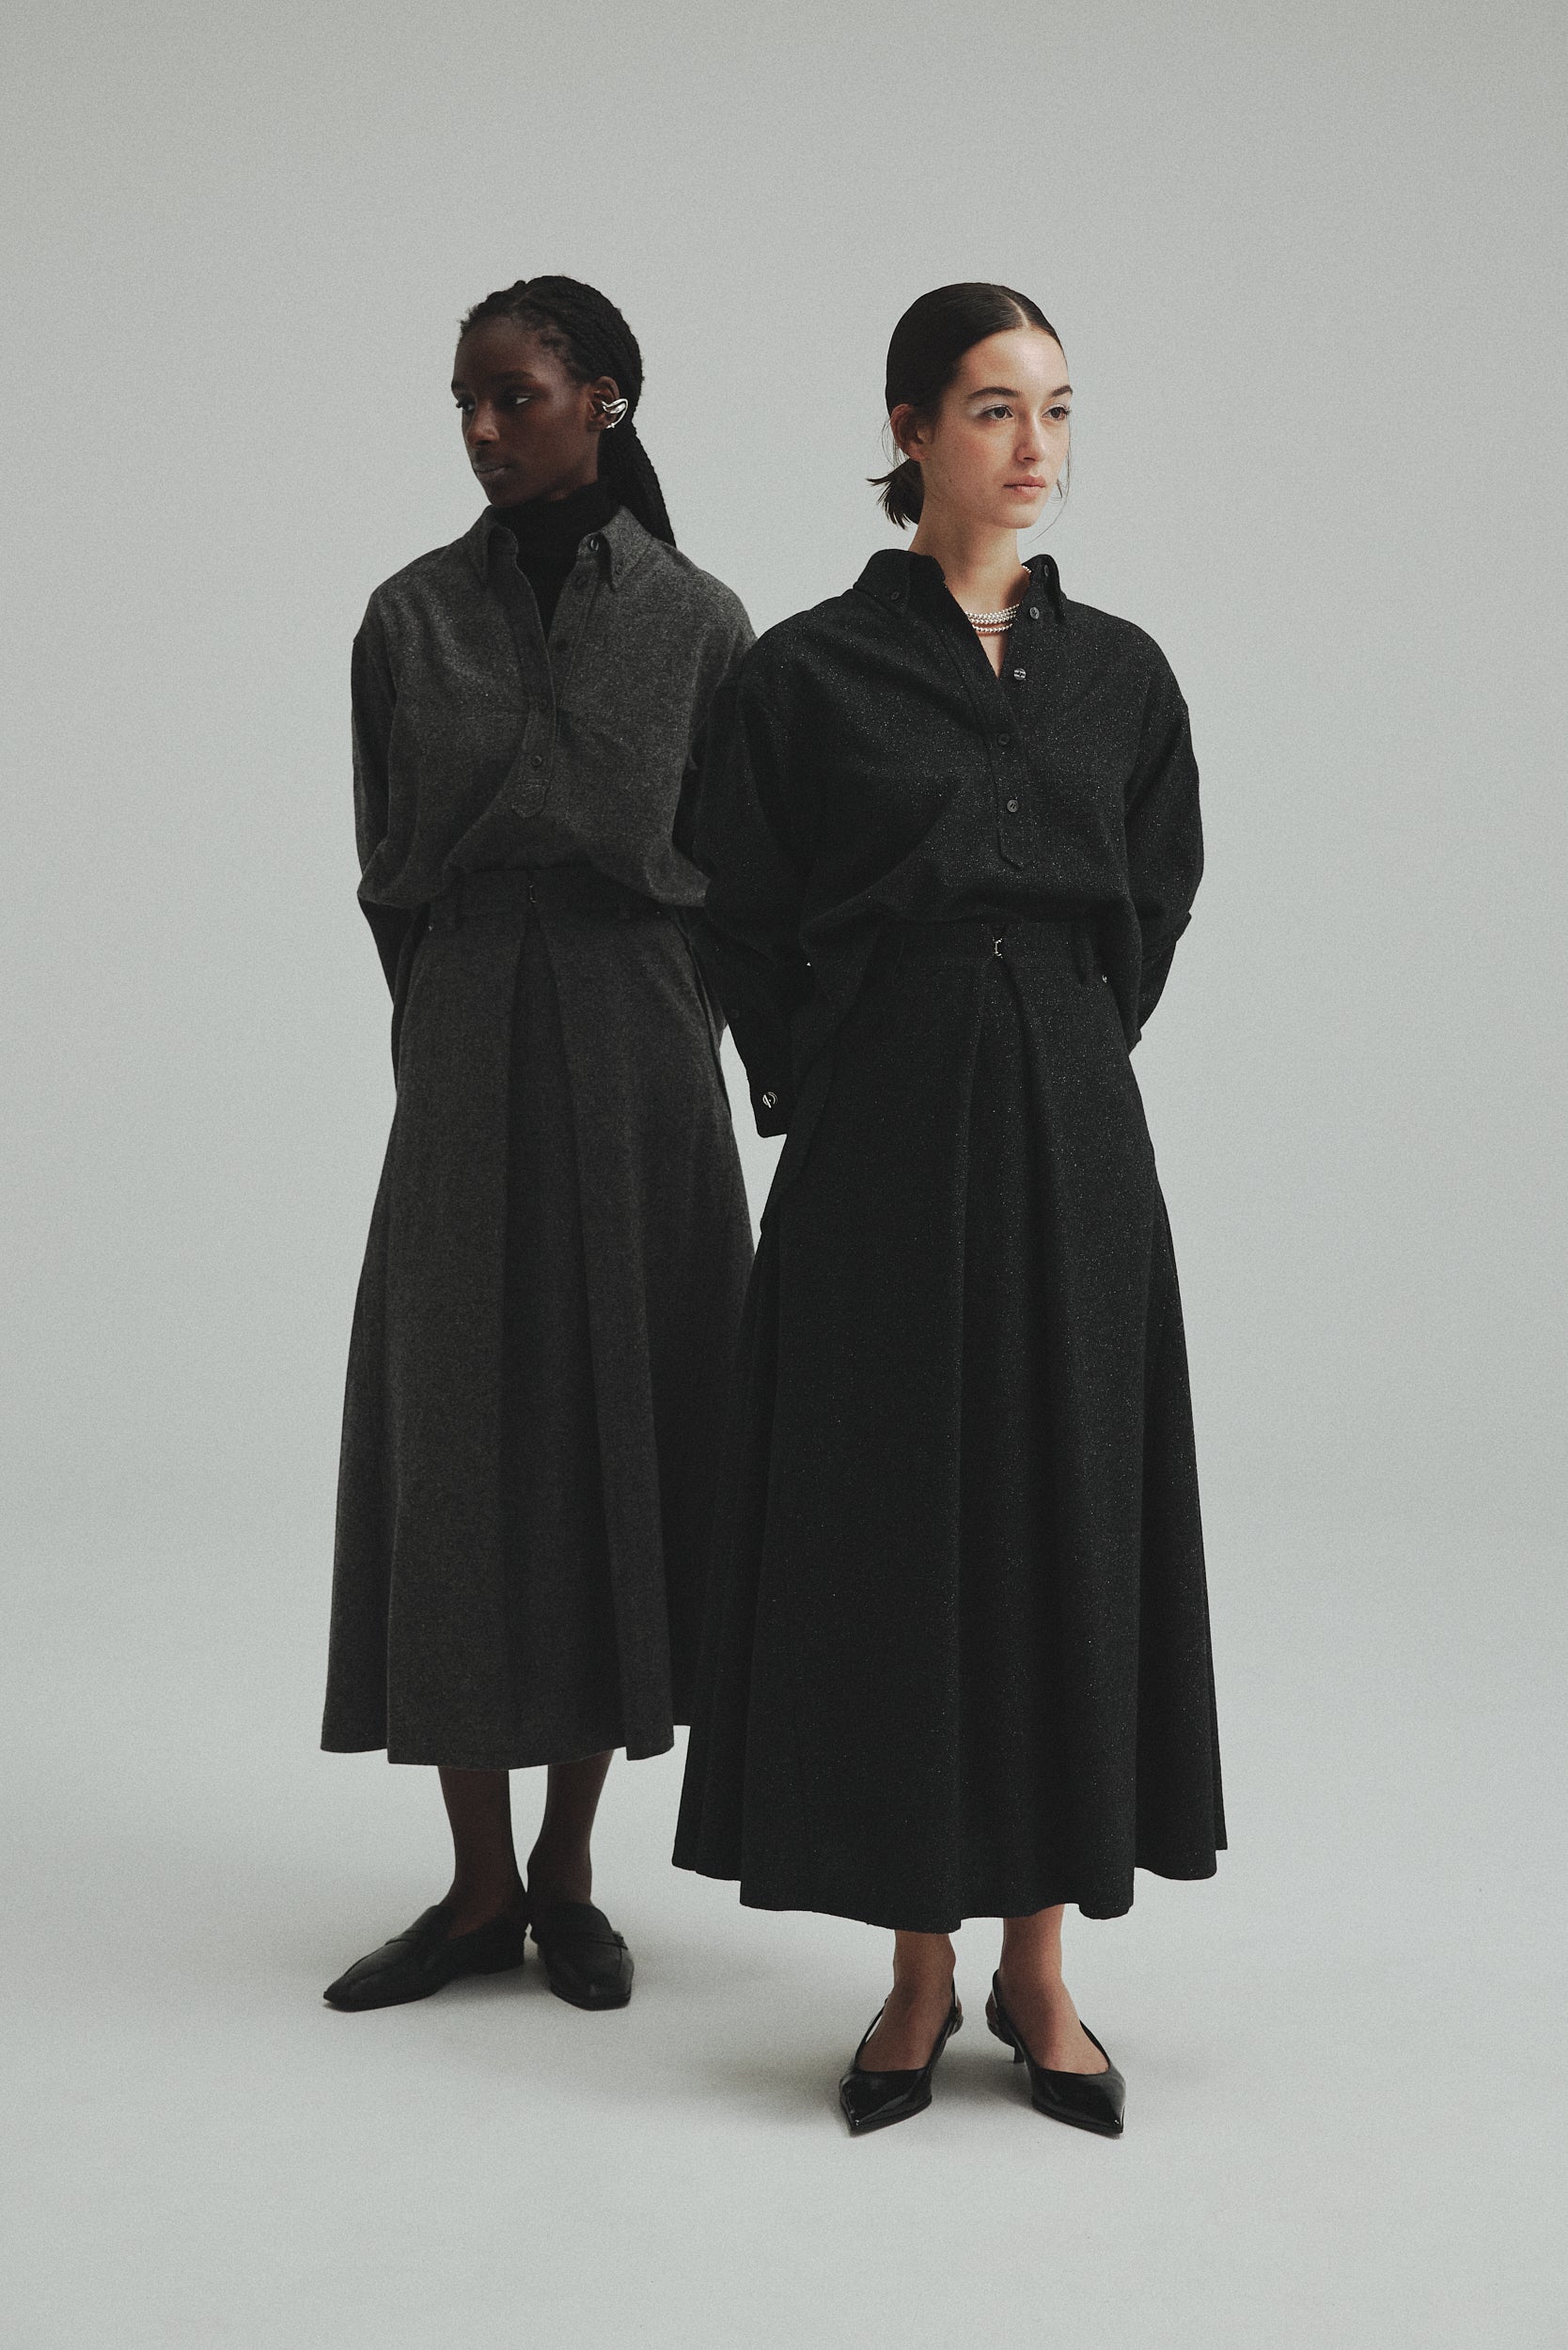 商品説明L'AUBE BLANC Tweed knit Wrap dress black - ロングワンピース